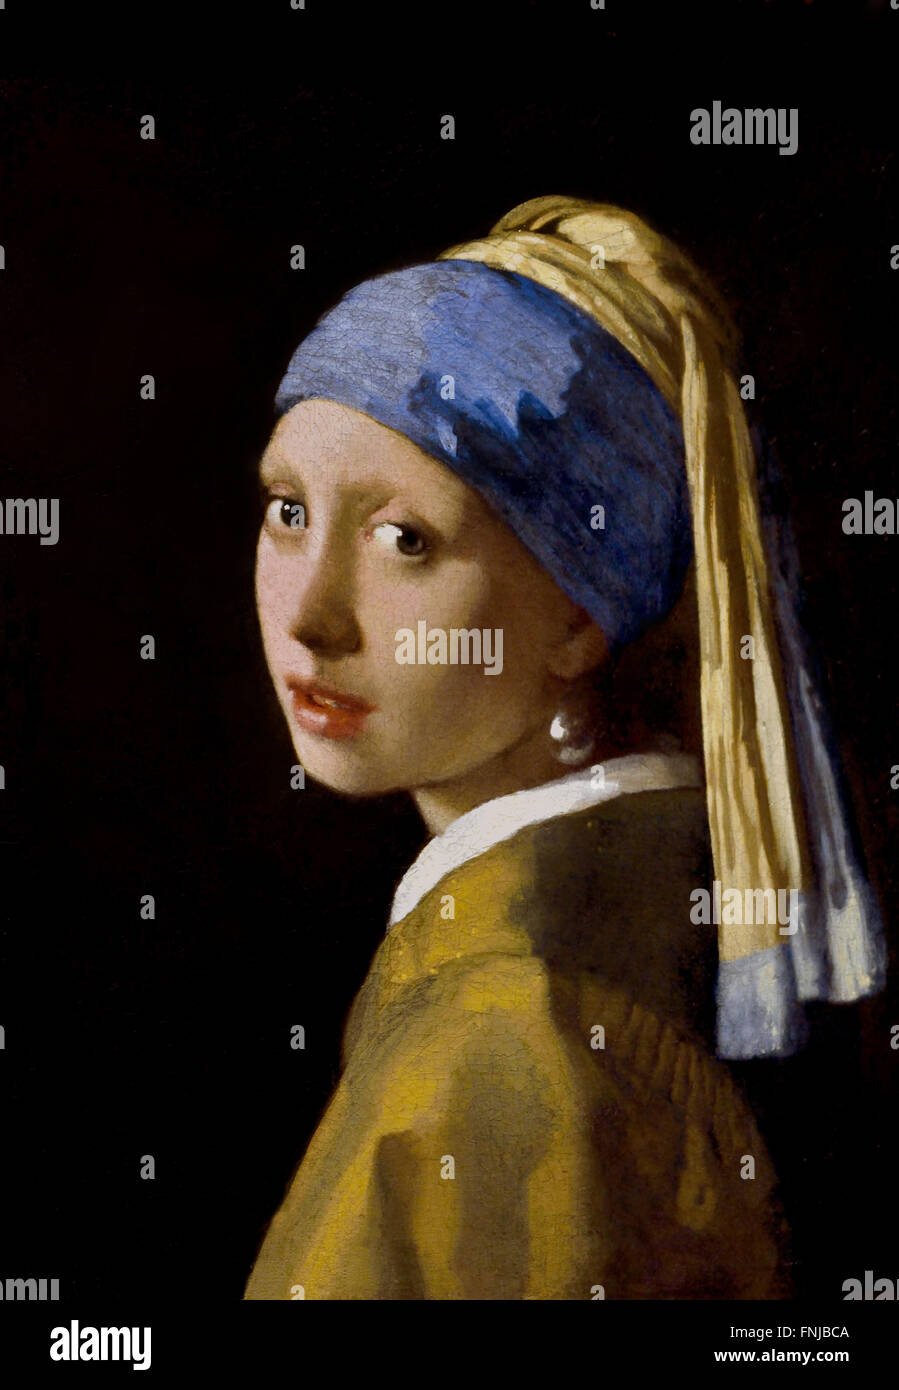 Mädchen mit Perlenohrring 1665 Johannes Vermeer oder Jan Vermeer 1632 - 1675 Niederländische Niederlande ( niederländischer Maler im Goldenen Zeitalter, einer der größten Maler im 17. Jahrhundert. Bevorzugte zeitlose, gedämpfte Momente, bleibt rätselhaft, unnachahmliches Farbschema und verwirrender Lichtinhalt) Stockfoto